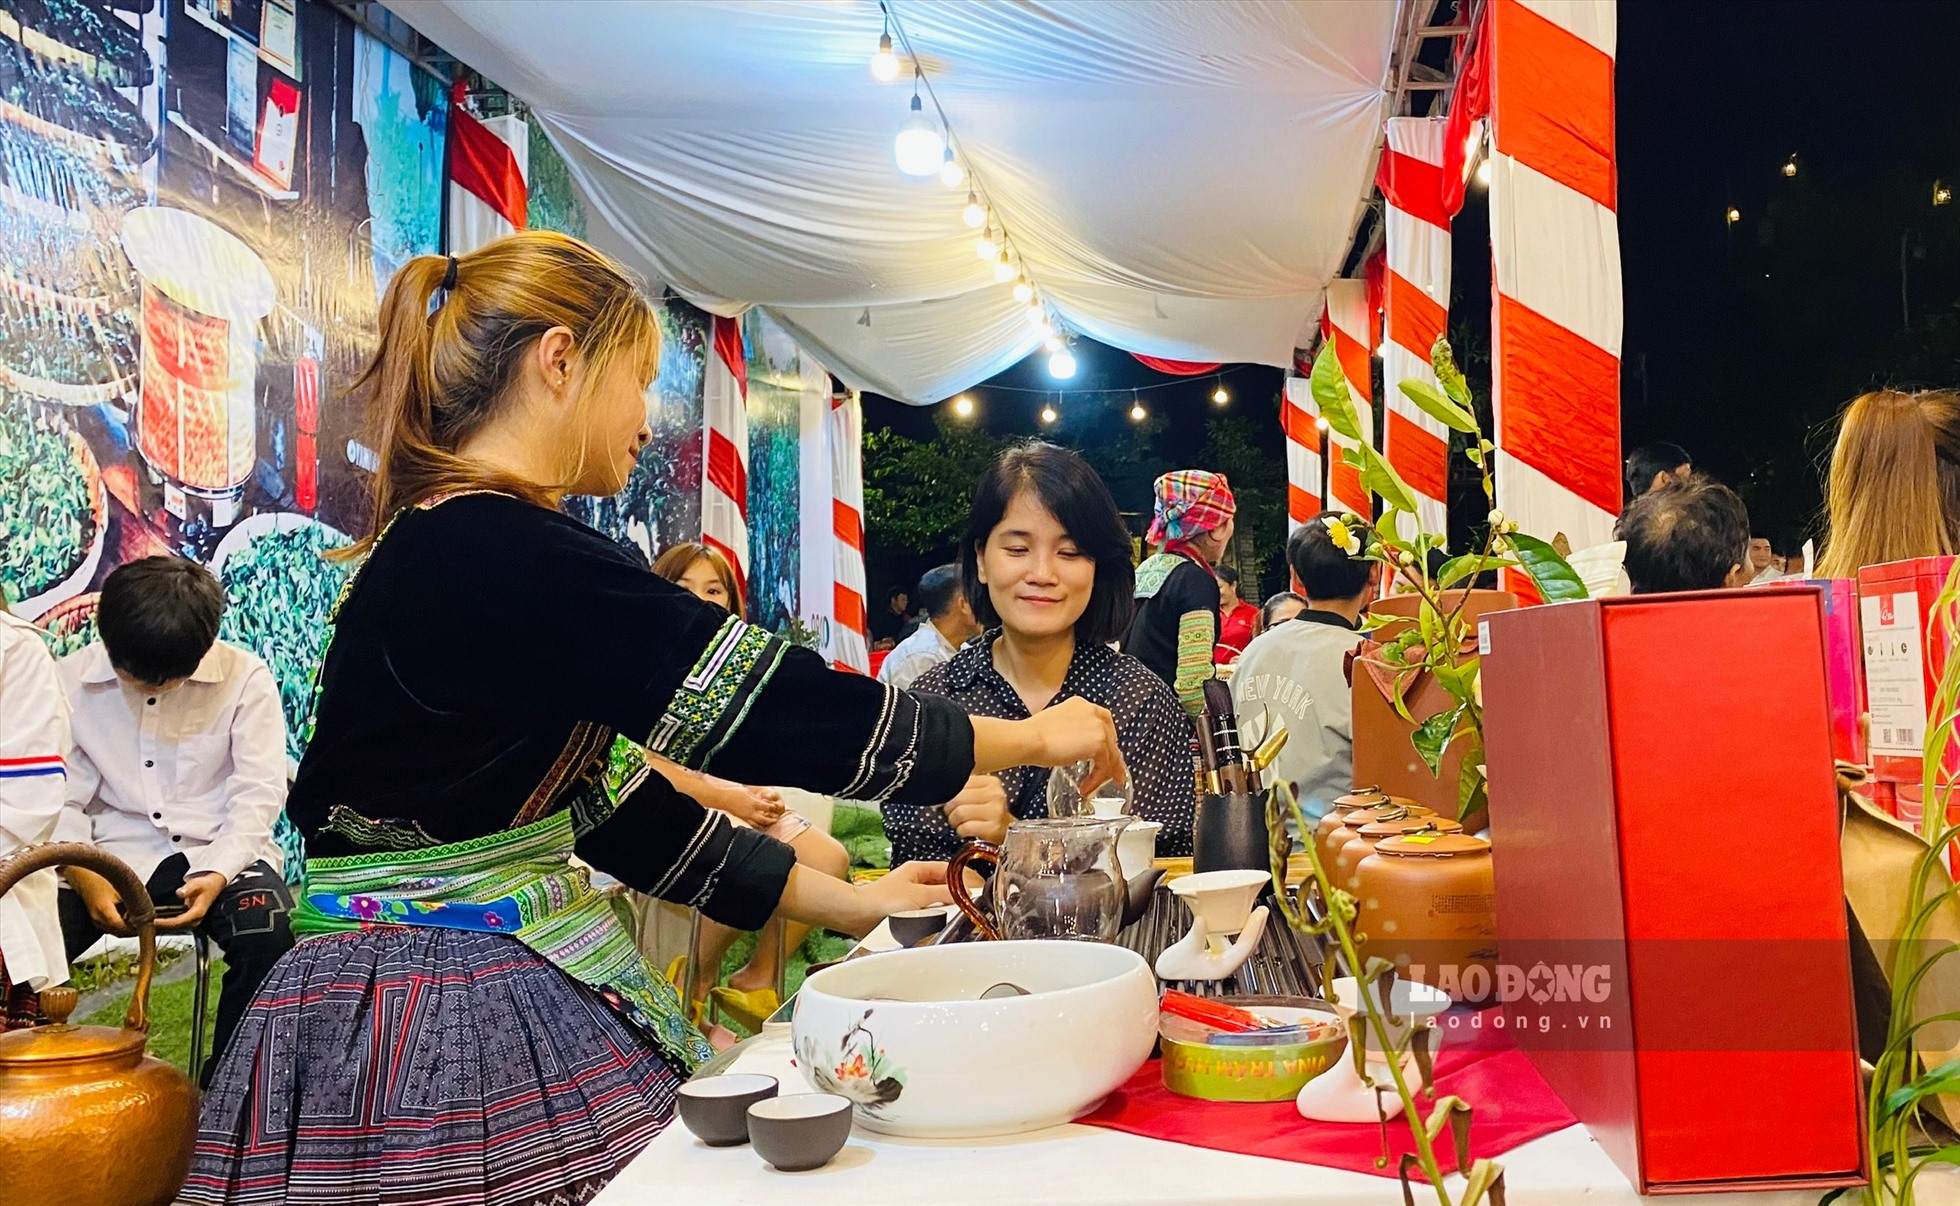 Tại đêm tiệc trà, các đại biểu, khách mời cùng du khách gần xa đã được thưởng thức các loại trà Shan tuyết do nhân dân các thôn, bản trên địa bàn xã Suối Giàng sản xuất như Diệp trà, Hồng trà, Bạch trà, Hoàng trà...Đồng thời, được giao lưu văn hóa, văn nghệ với đồng bào Mông trong không gian văn hóa trà đậm bản sắc văn hóa dân tộc.